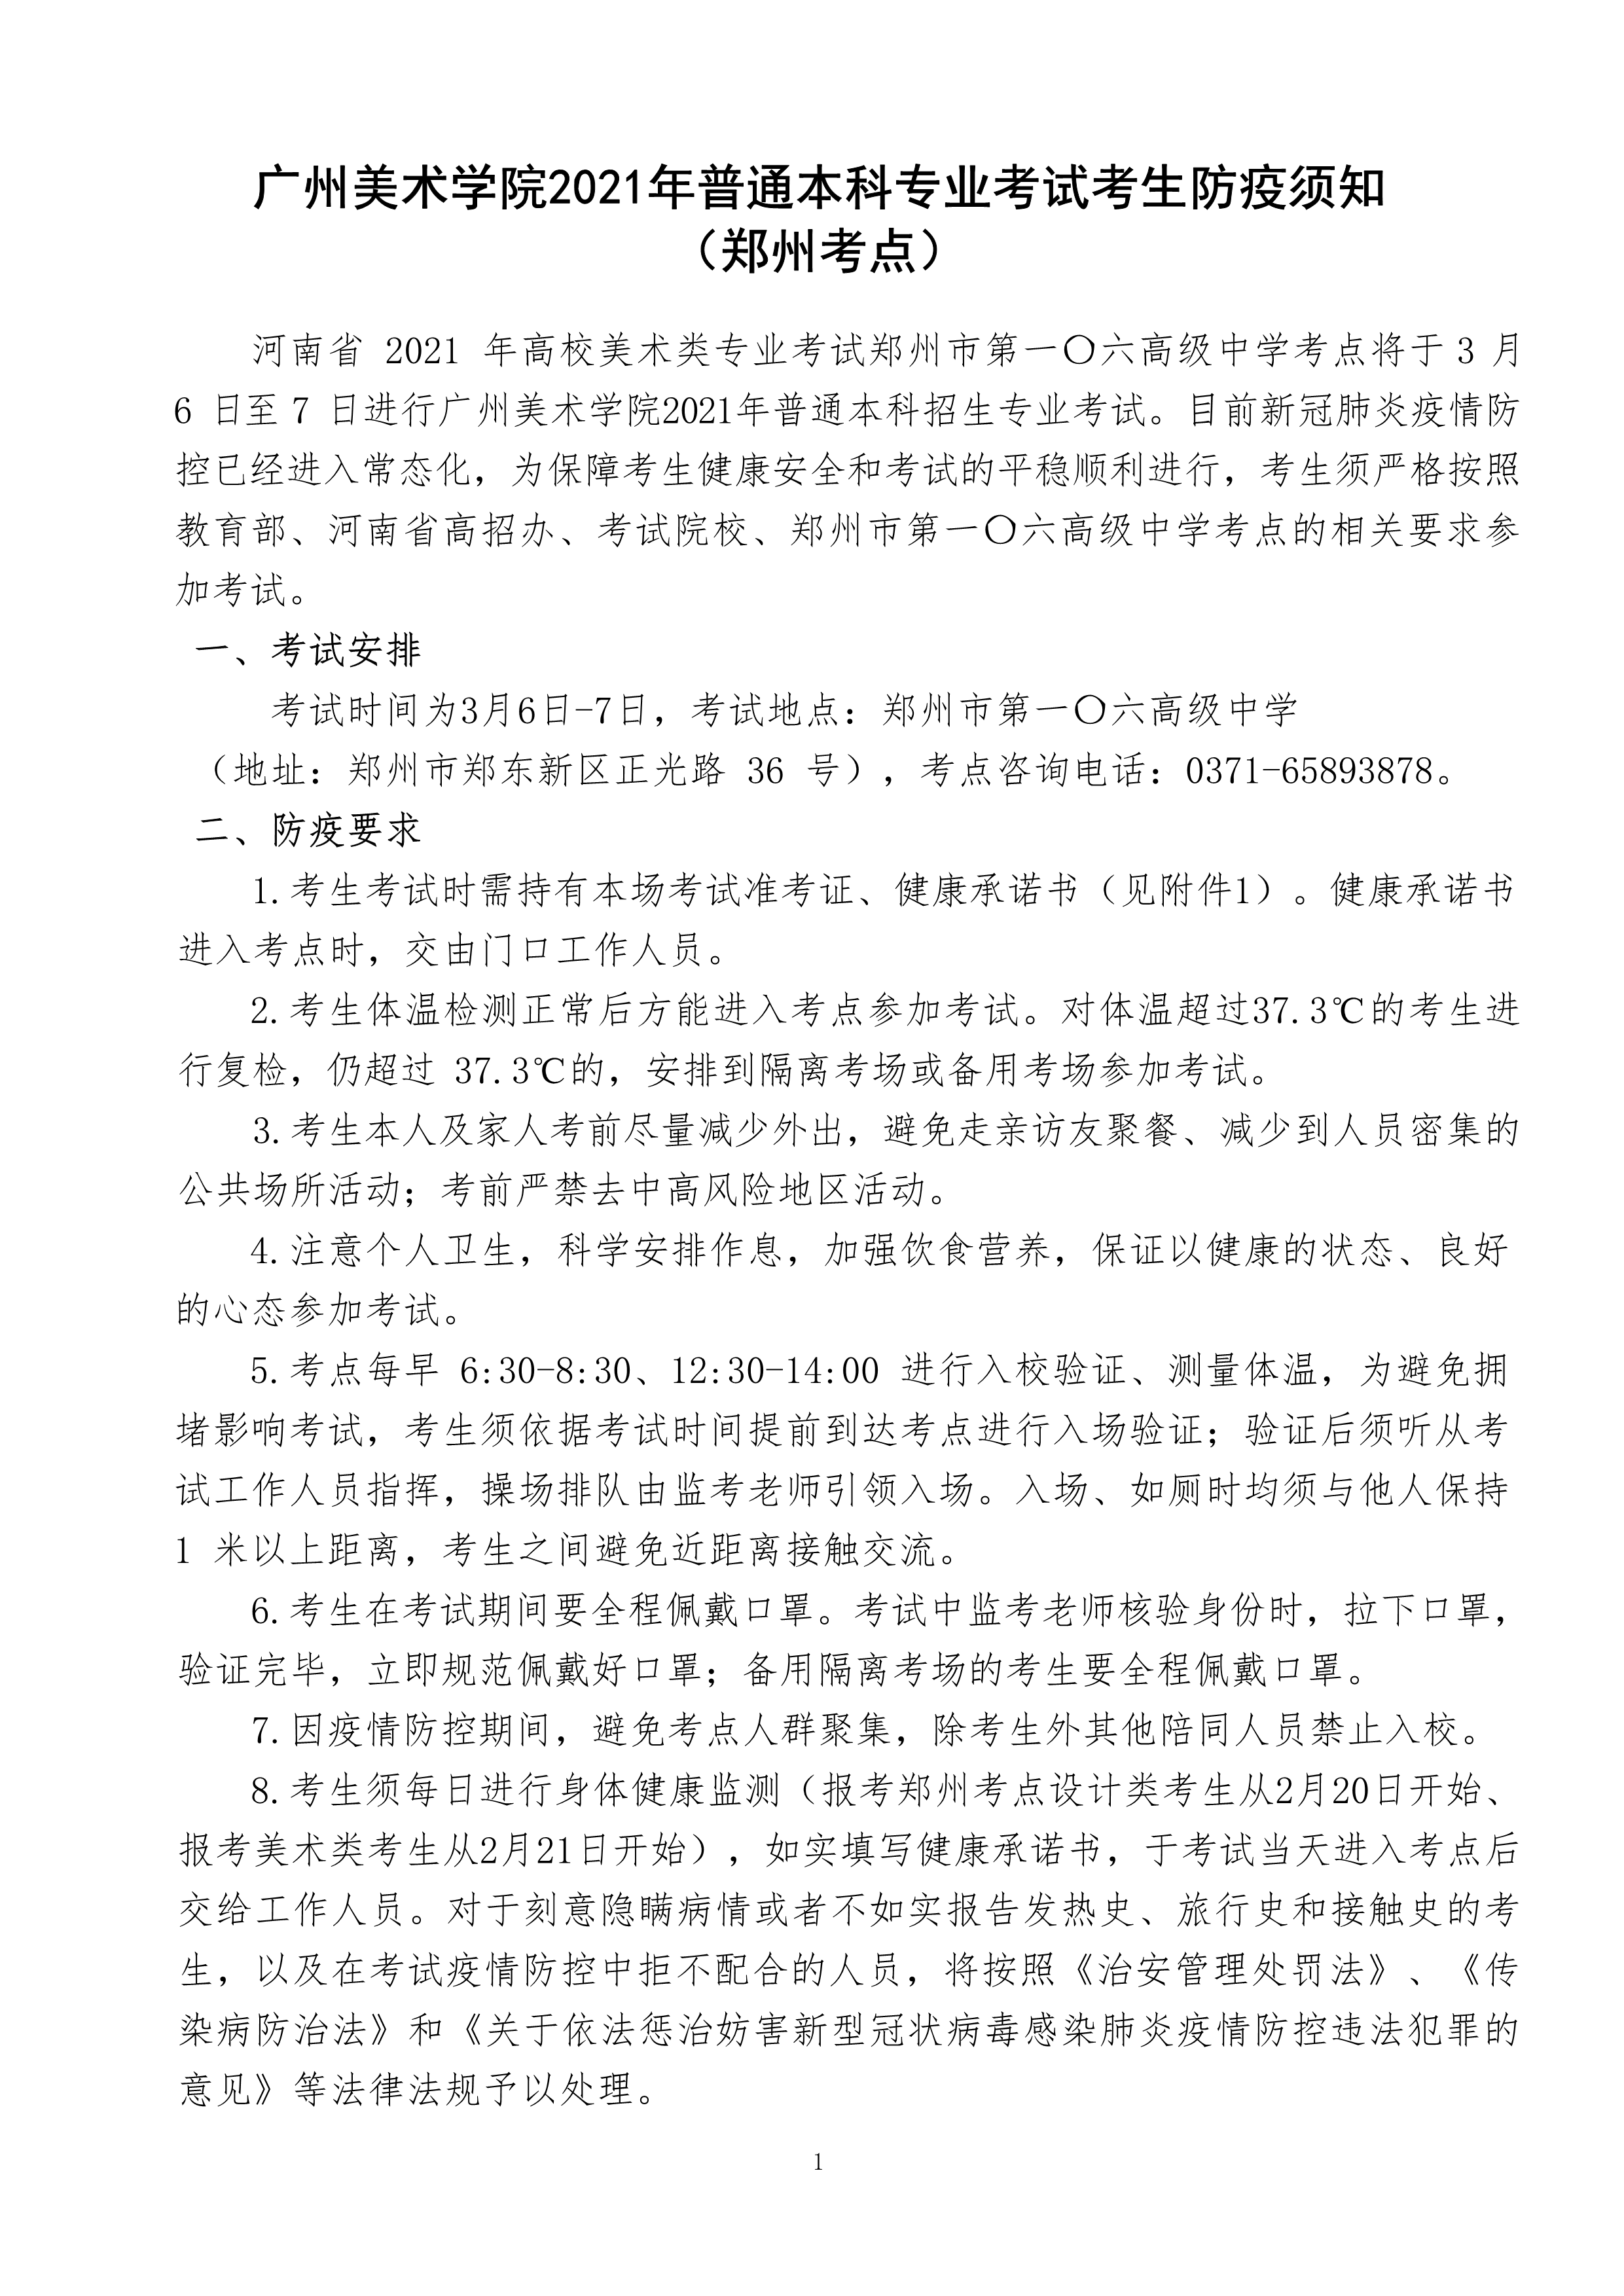 附件1：广州美术学院2021年普通本科专业考试考生防疫须知（郑州考点）_1.png